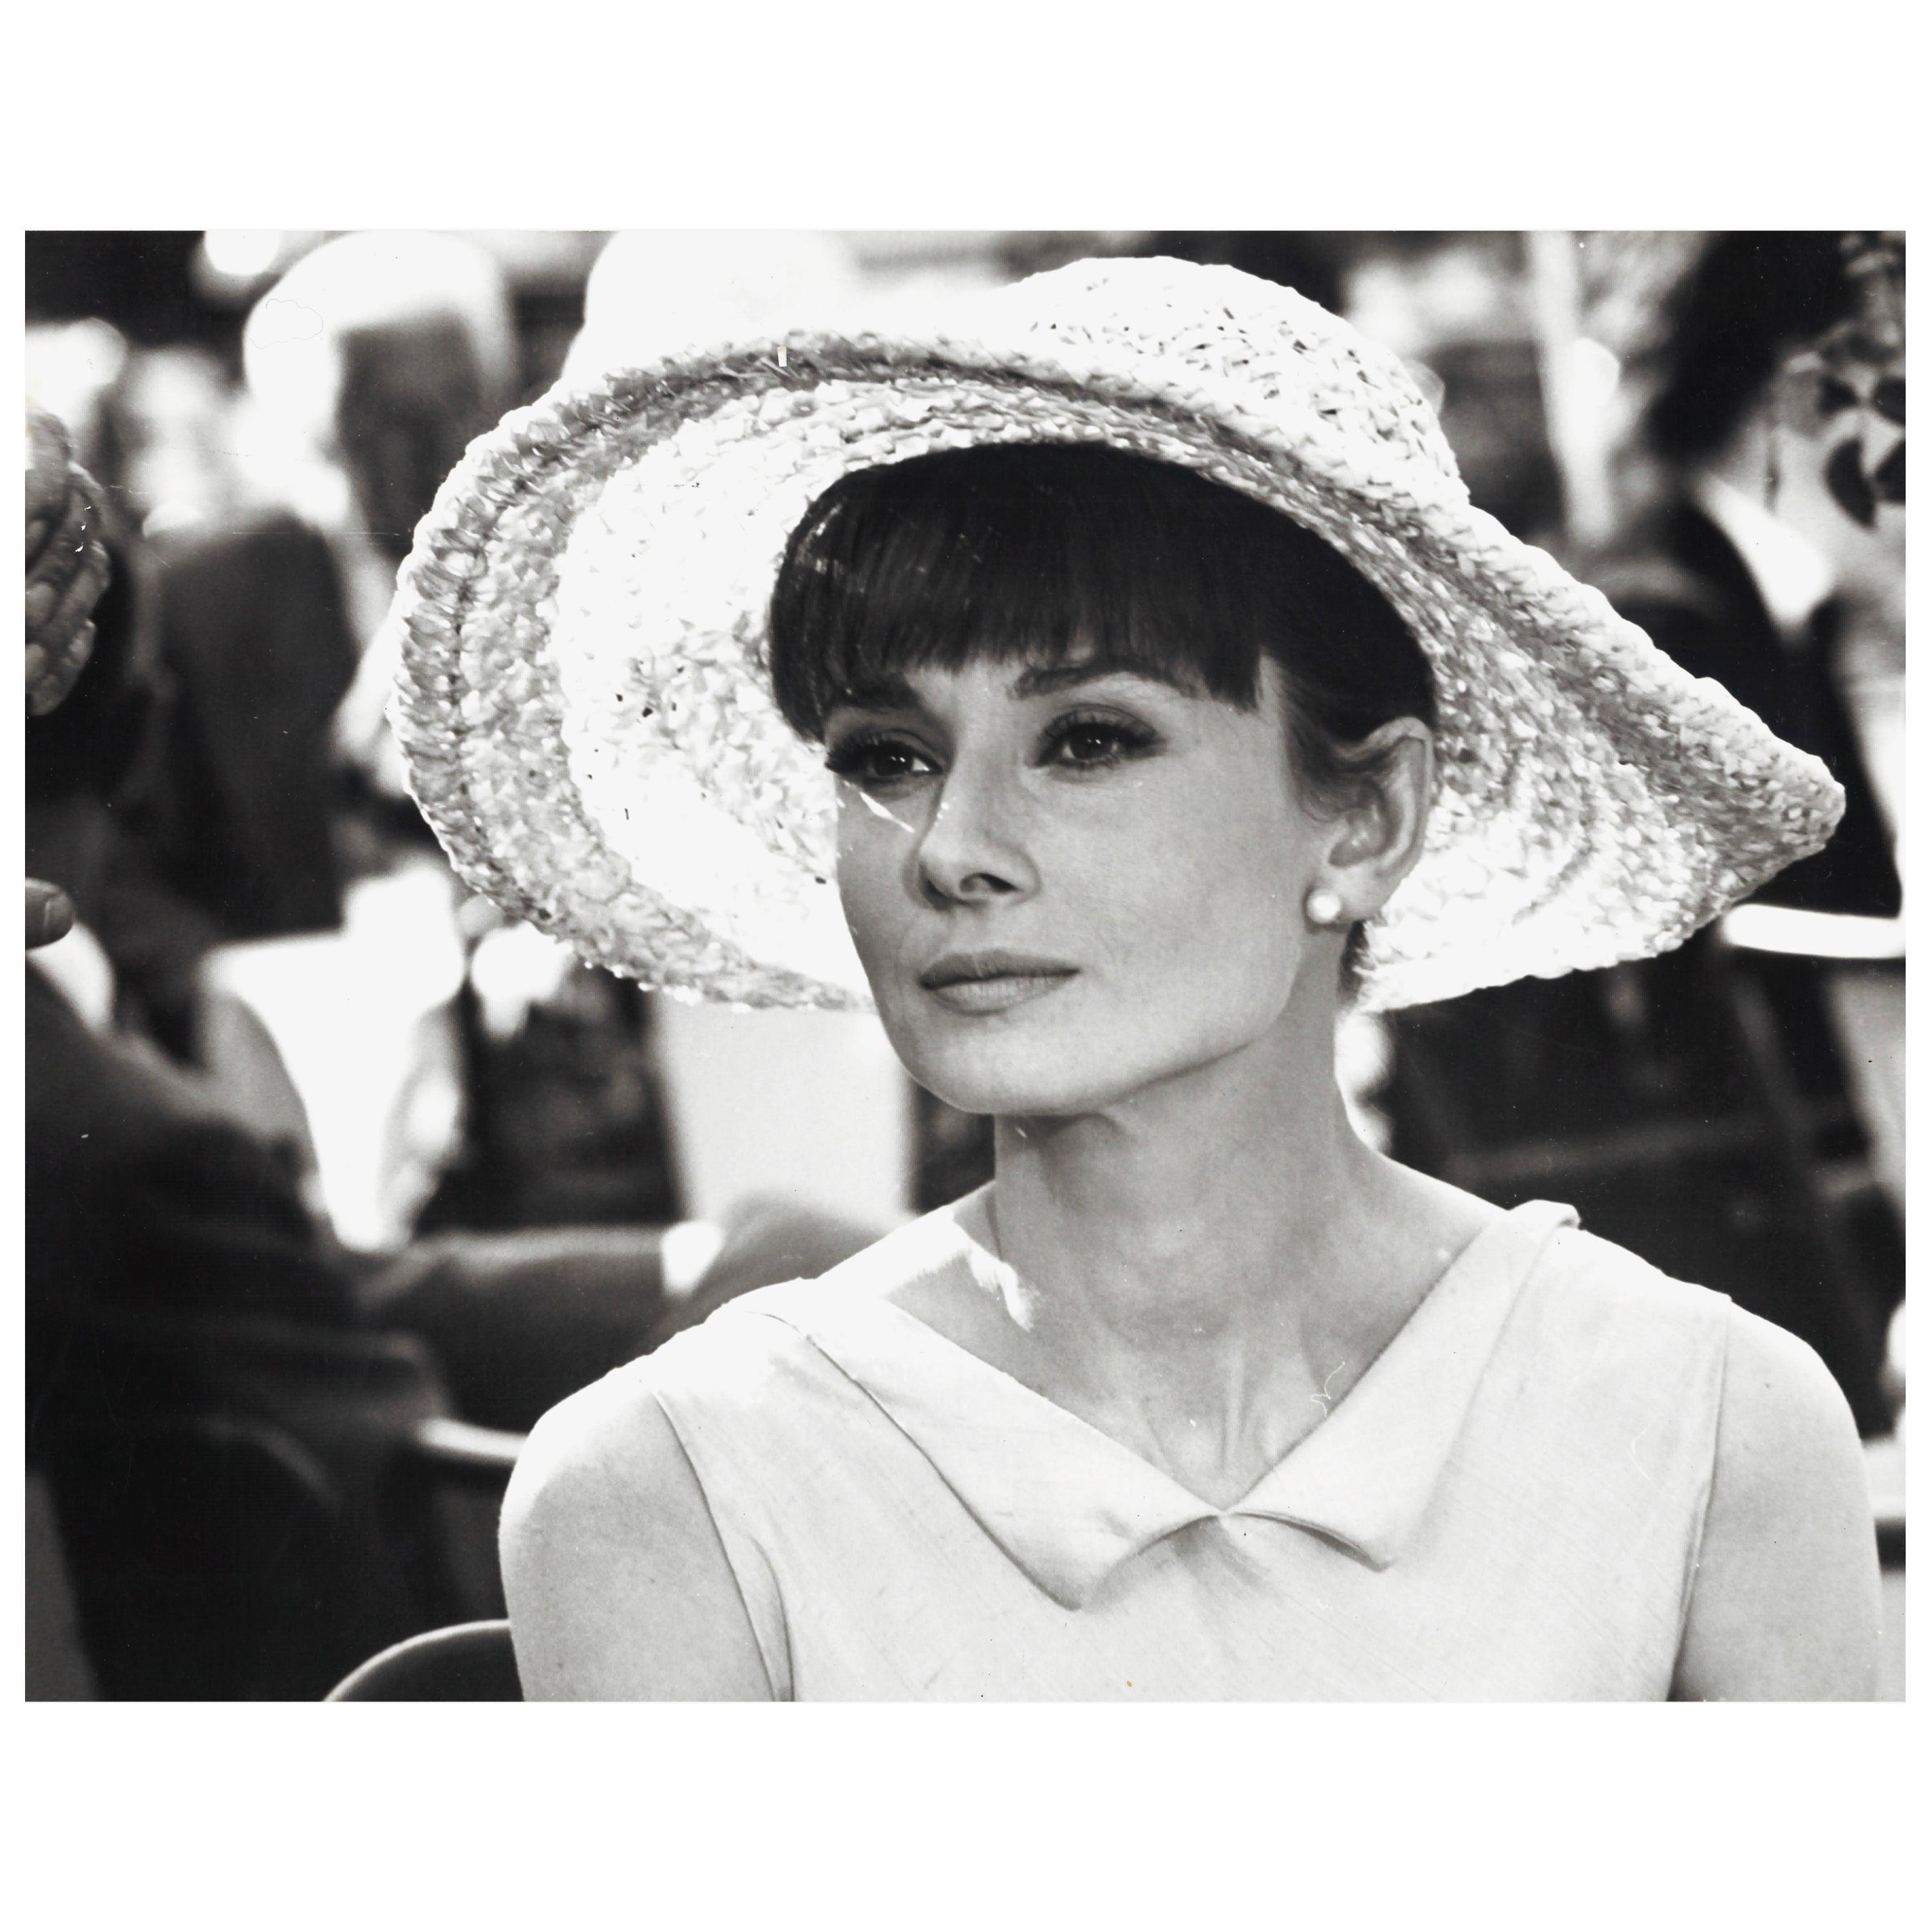 Audrey Hepburn, Vintage Photograph by Vincent Rossell, Paris, 1962